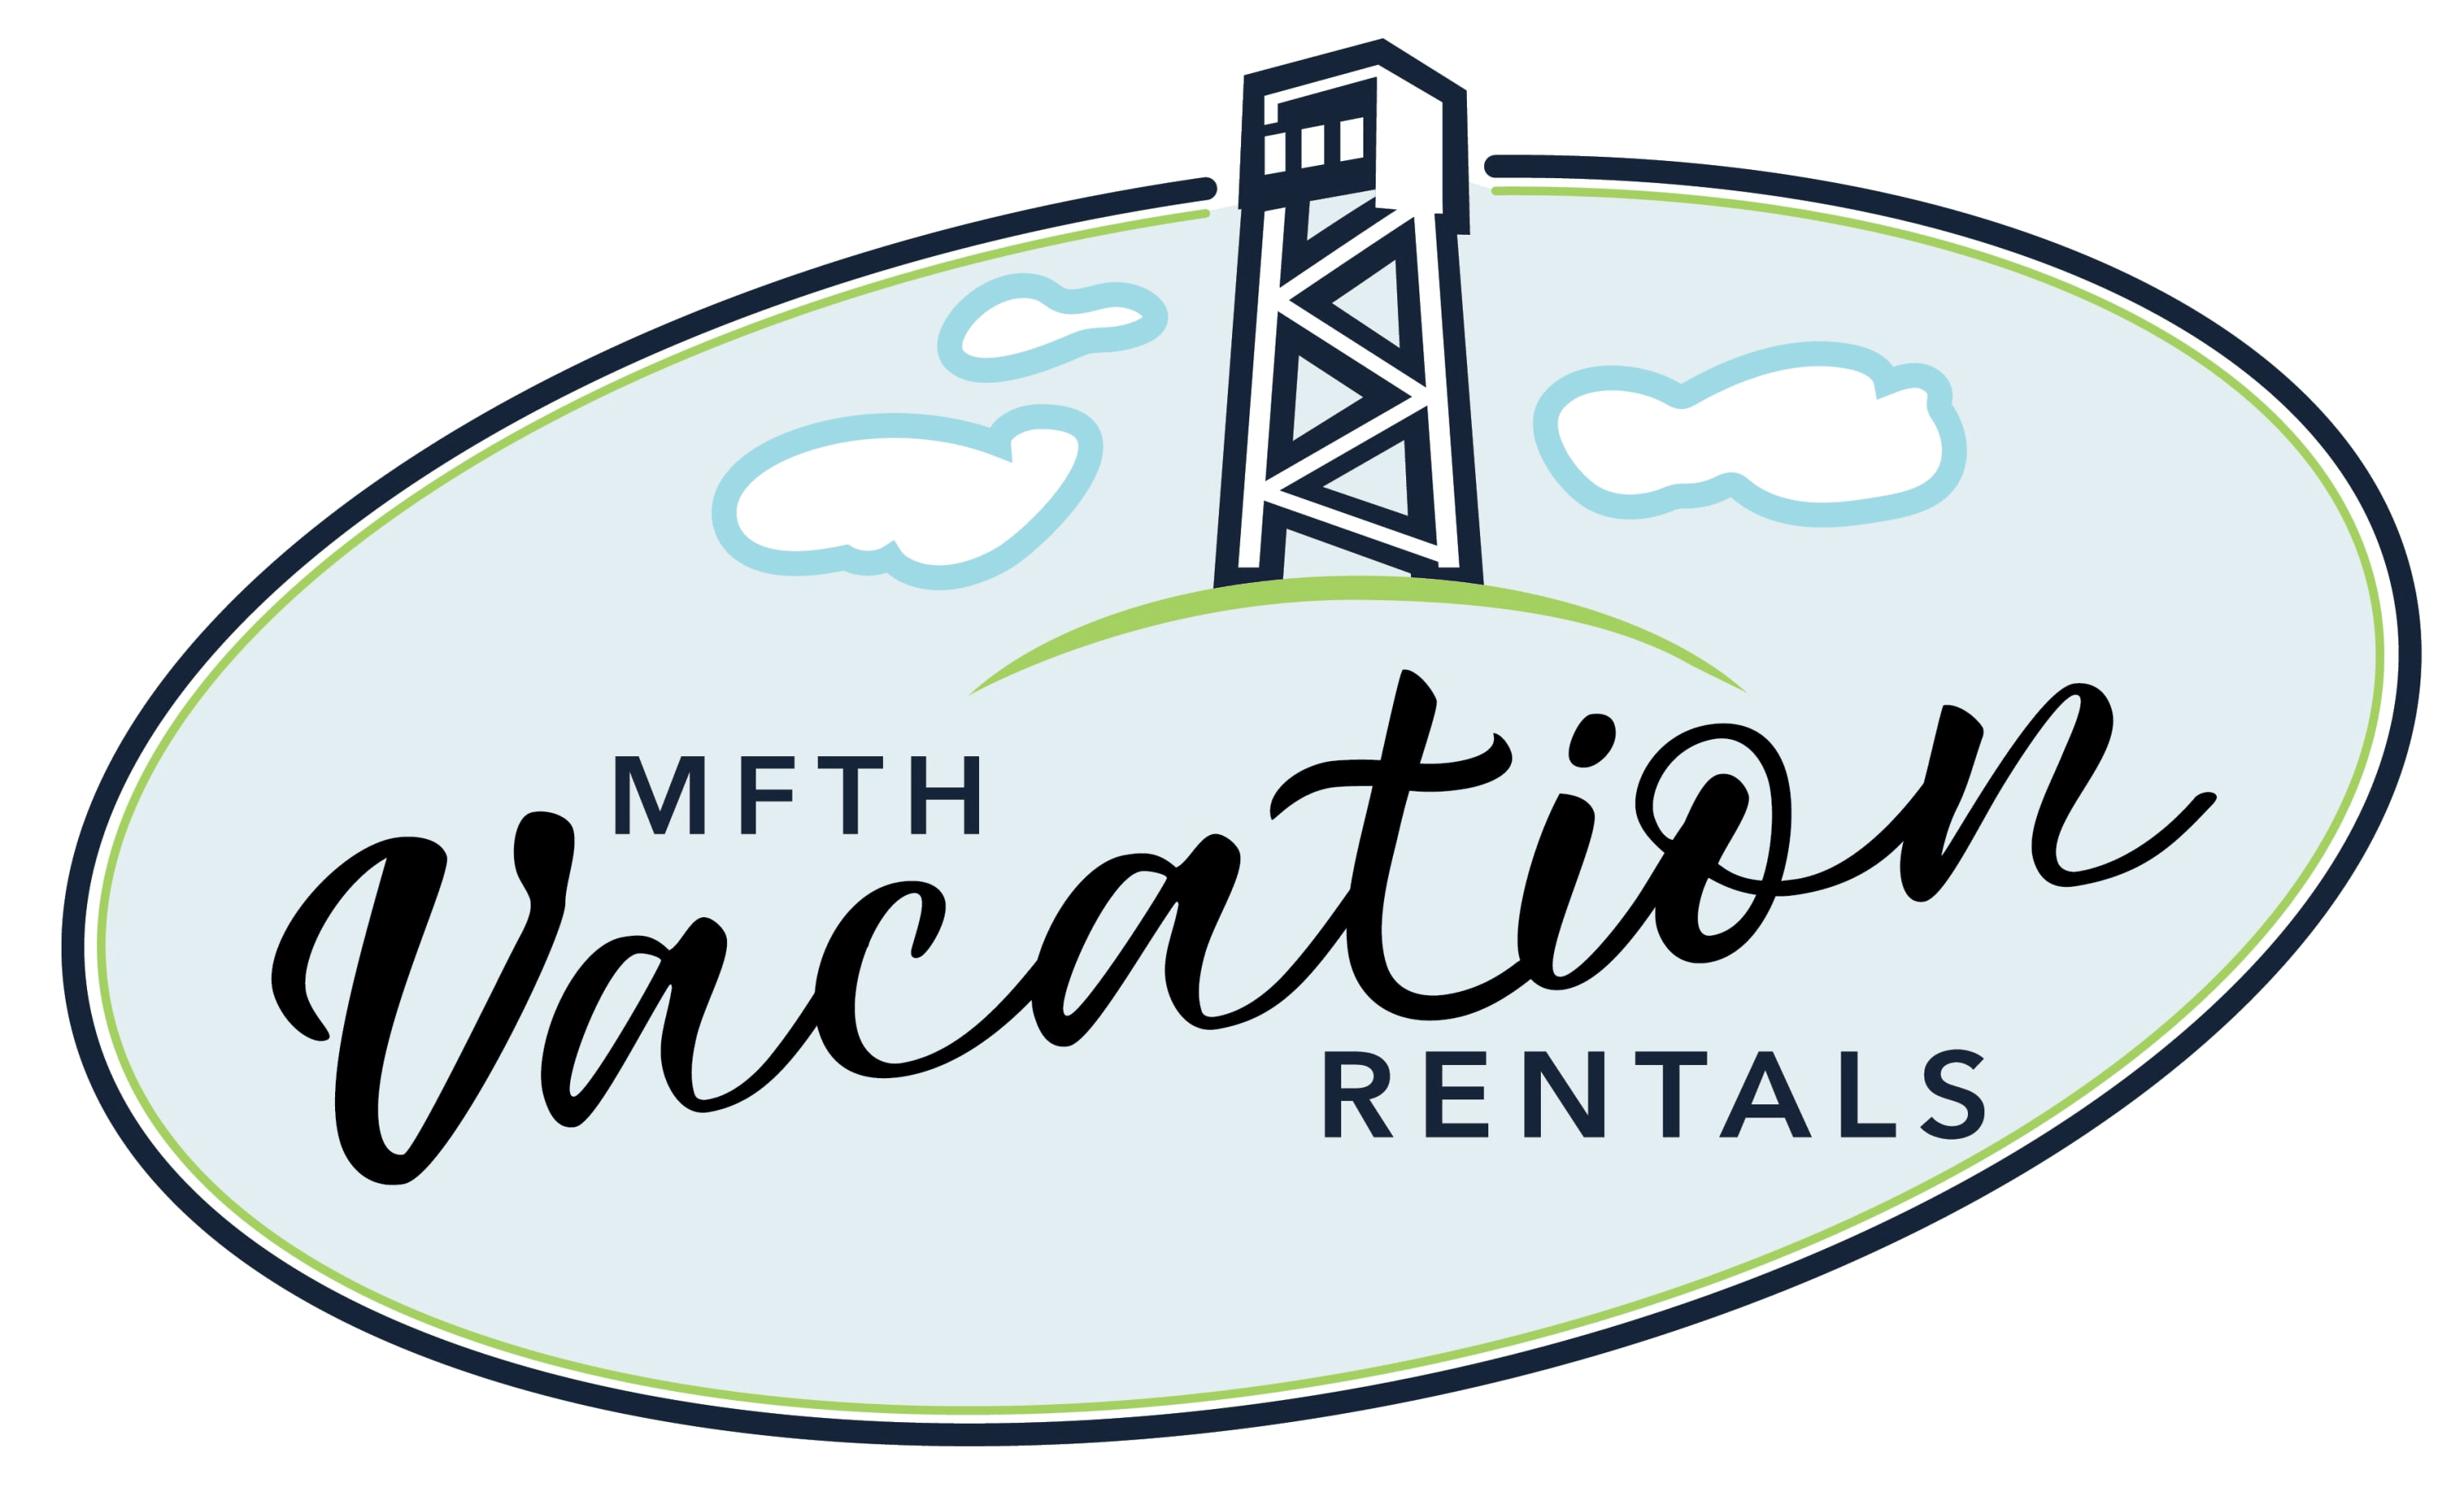 MFTH Vacation Rentals